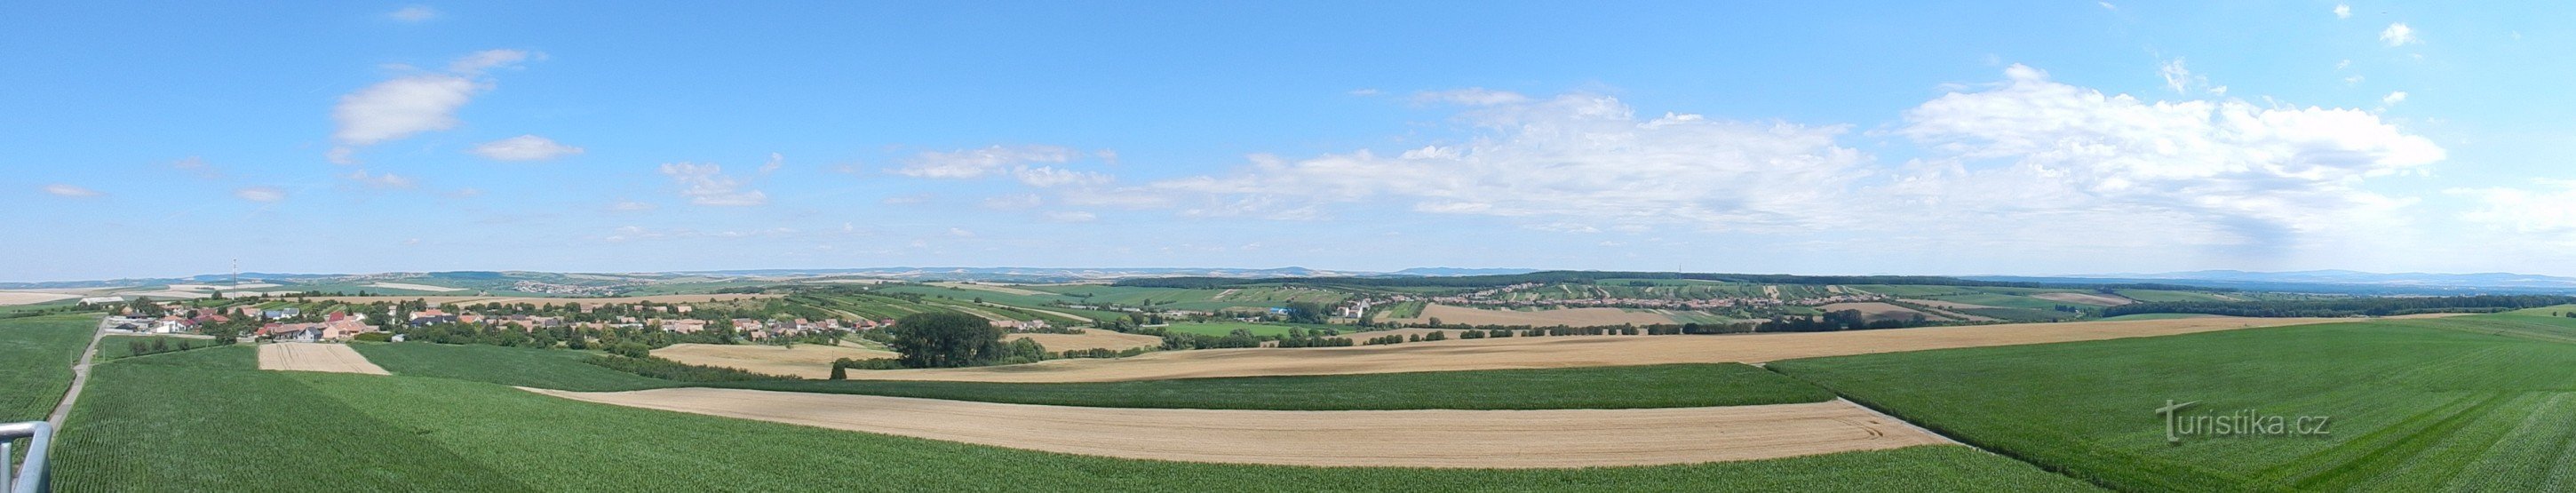 Uitzicht vanaf de uitkijktoren van Na Podluží